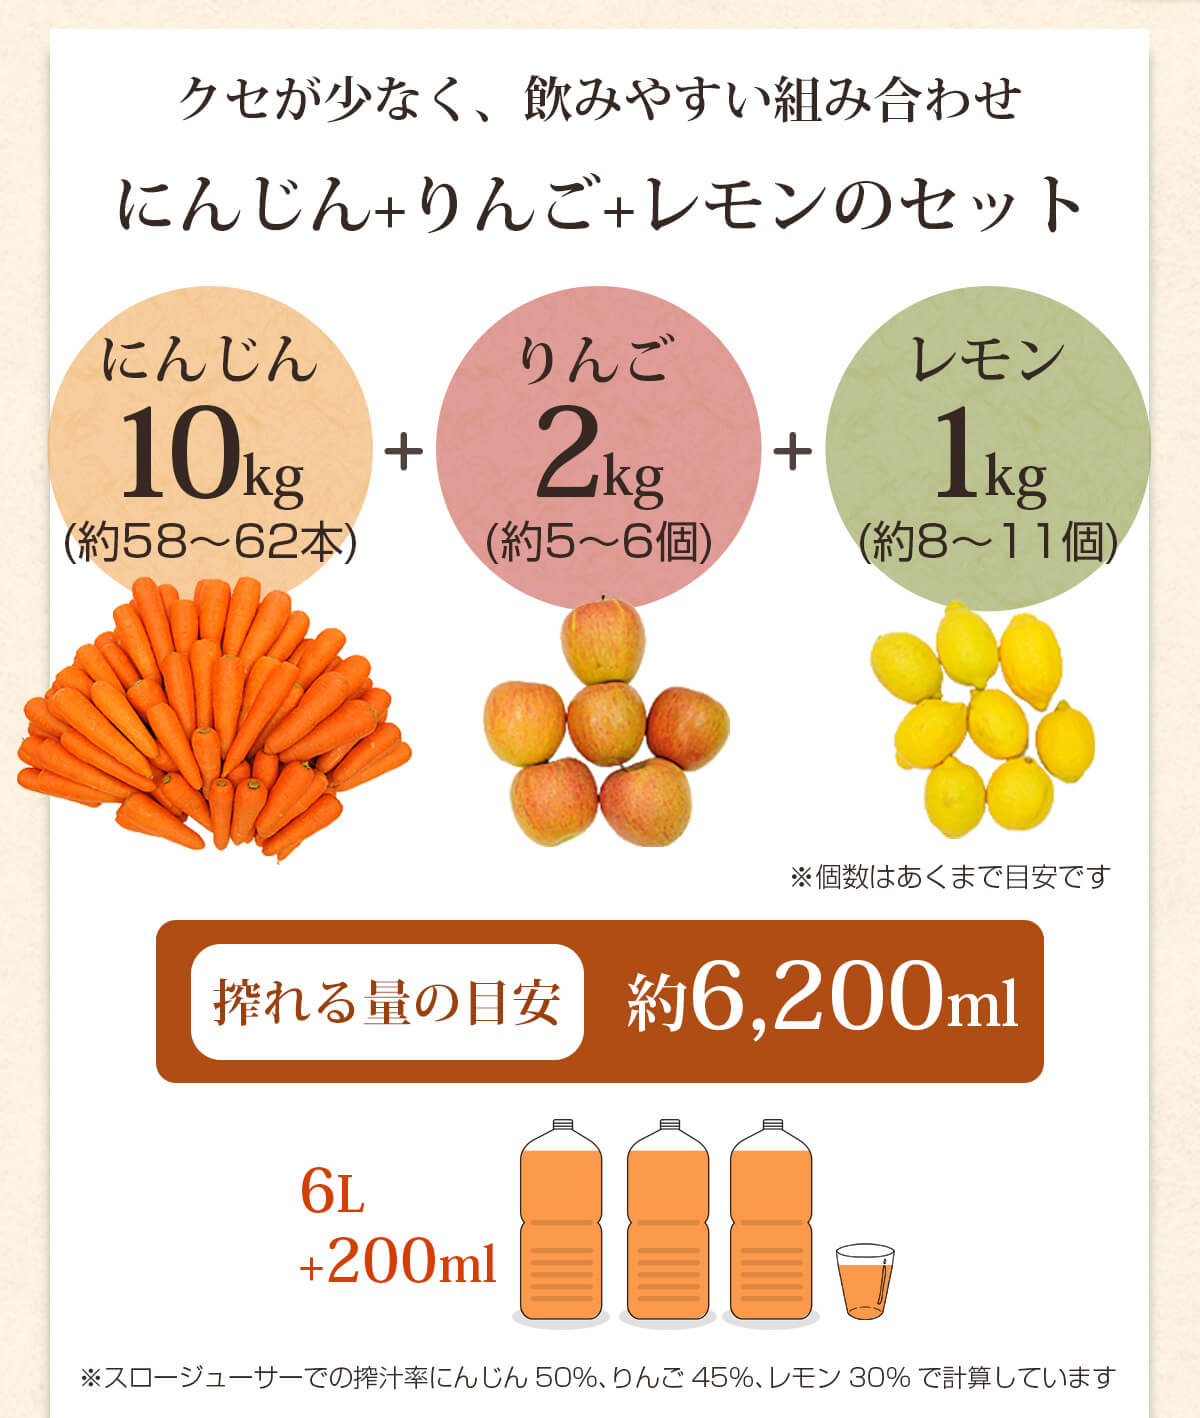 人参10kg＋りんご2kg＋レモン1kgで搾れる量の目安は約6,200ml